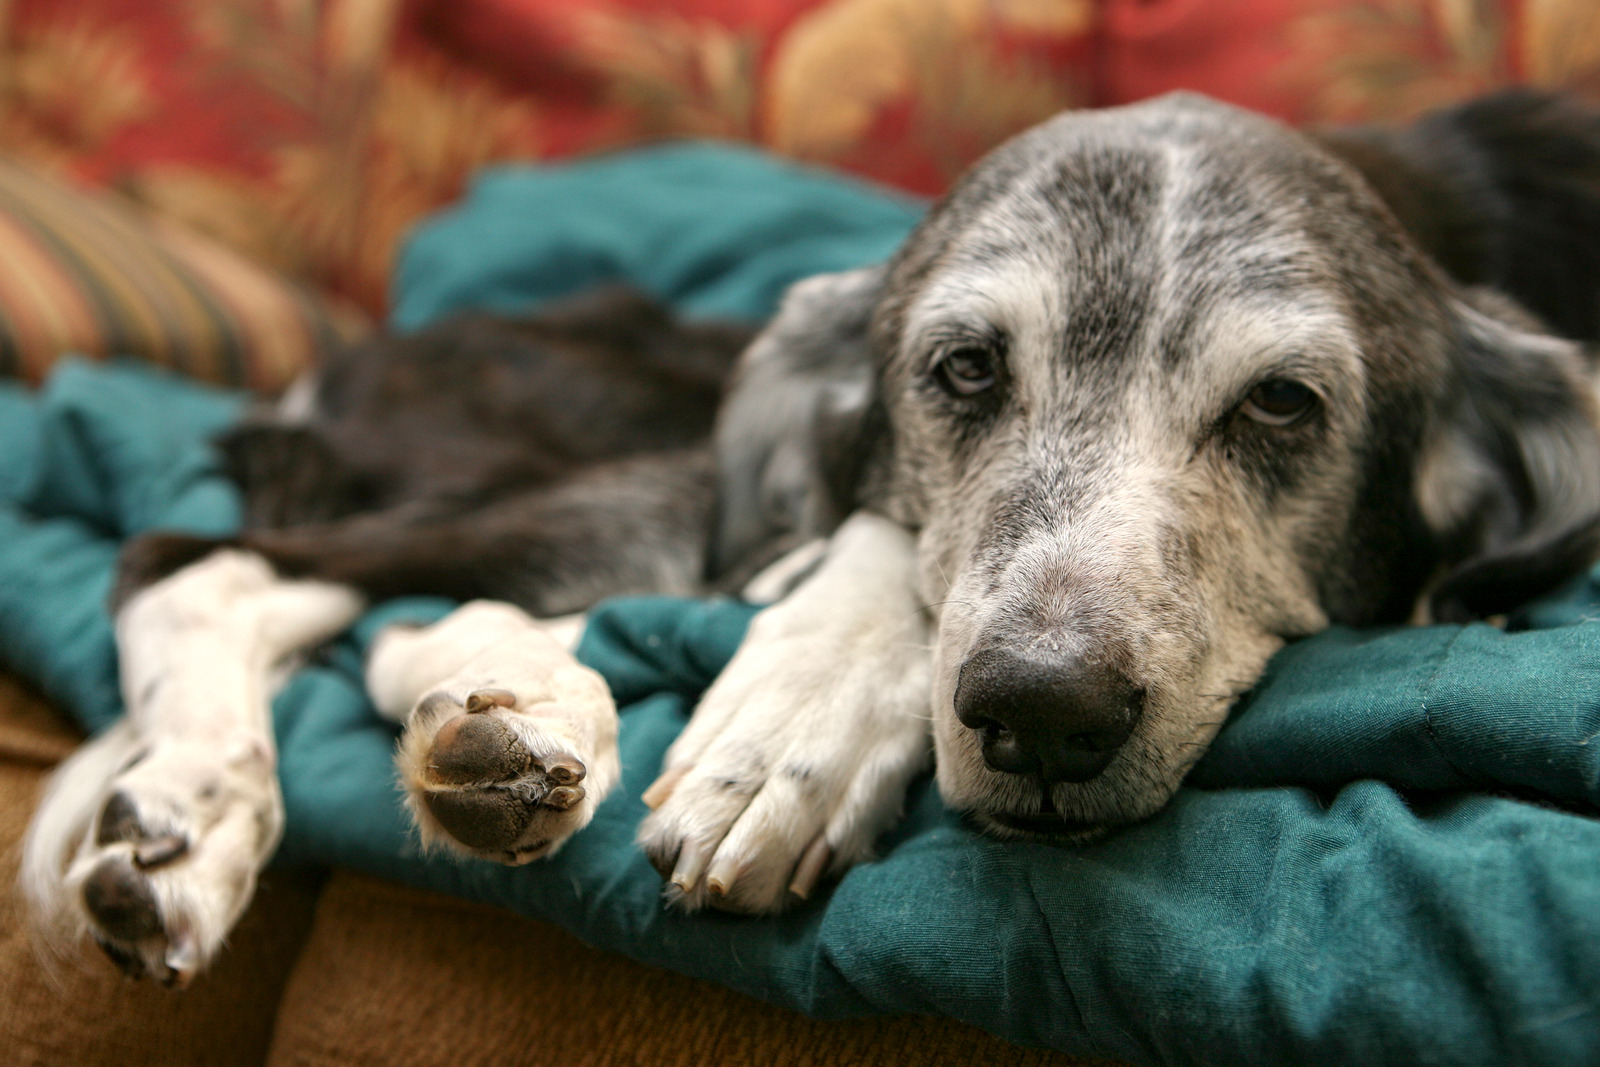 Dierenarts onderzoekt labrador hond met ziekte die neerligt|Oude grijze hond ligt op blauw dekentje en kijkt triest in de camera door pijn van artrose